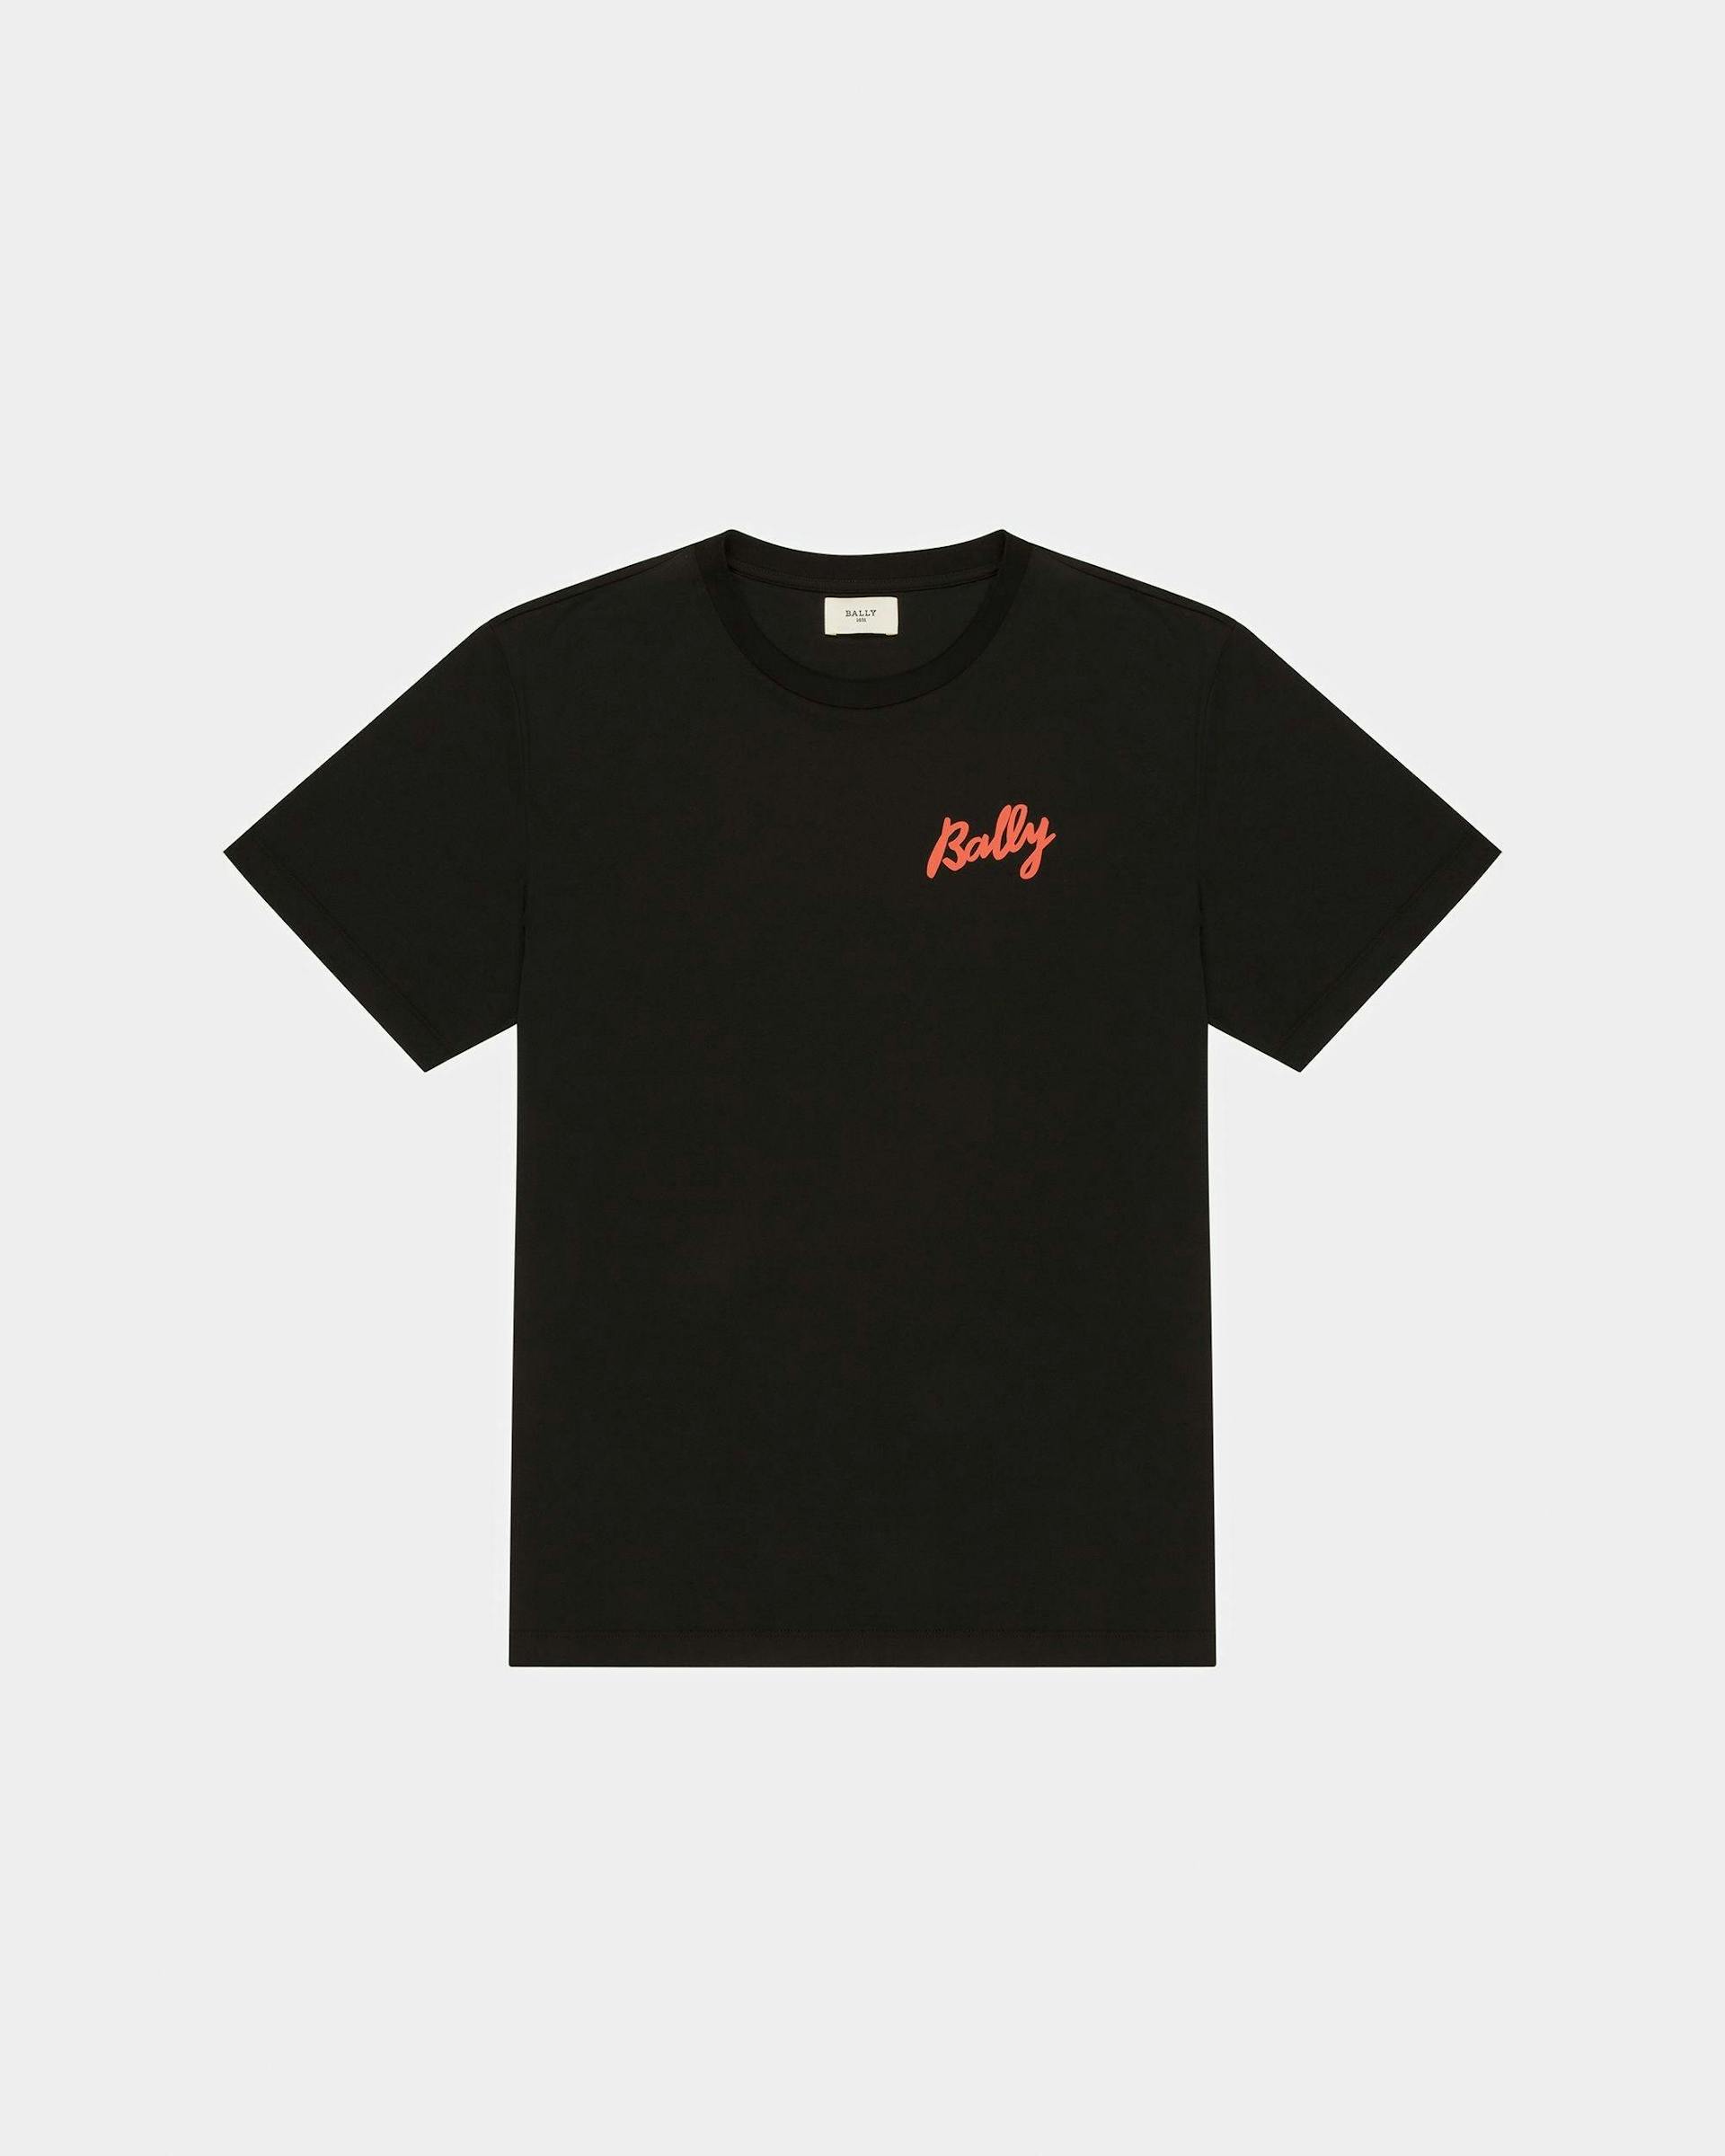 T-Shirt In Cotone Nero E Arancione - Uomo - Bally - 01